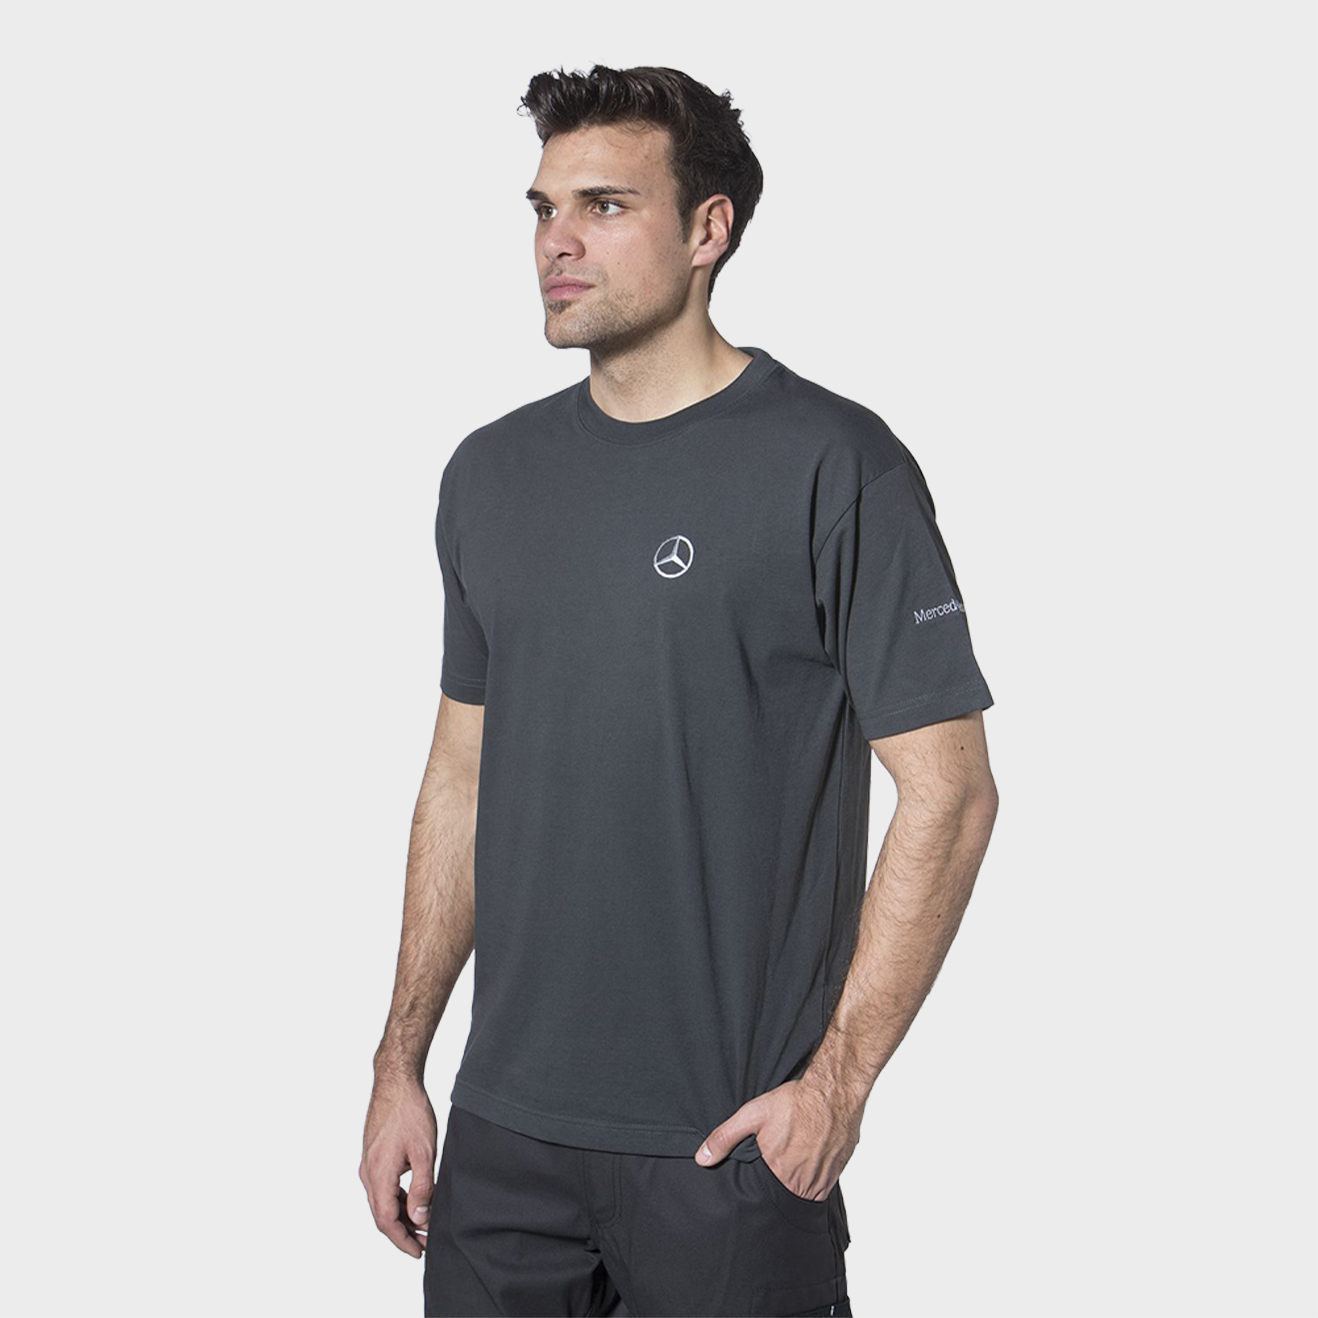 T-Shirt, Unimog, grau, mit Unimog-Logo